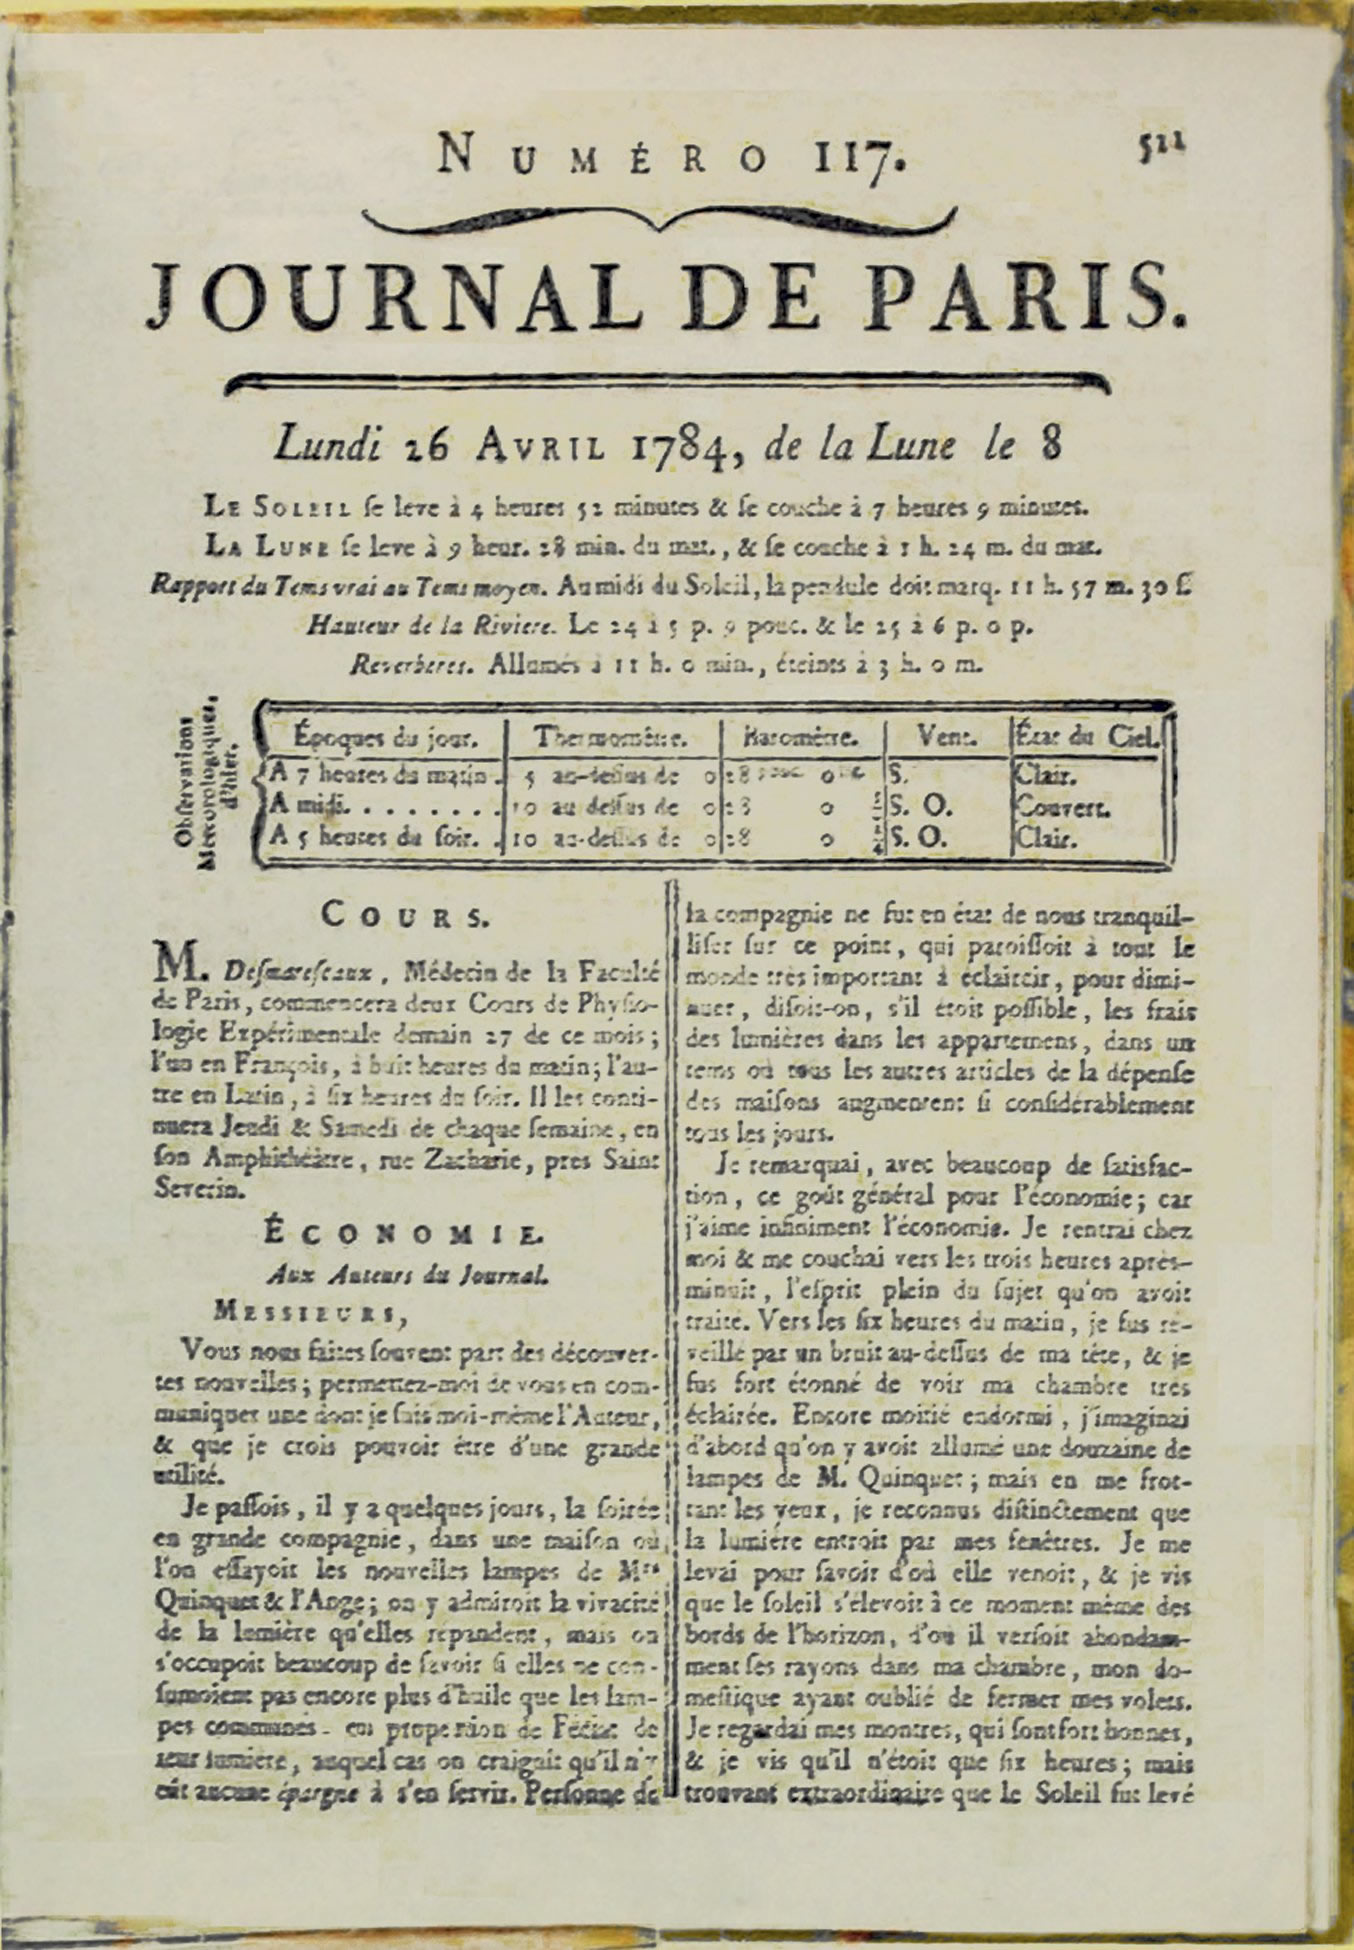 Journal de Paris, 16 April 1784